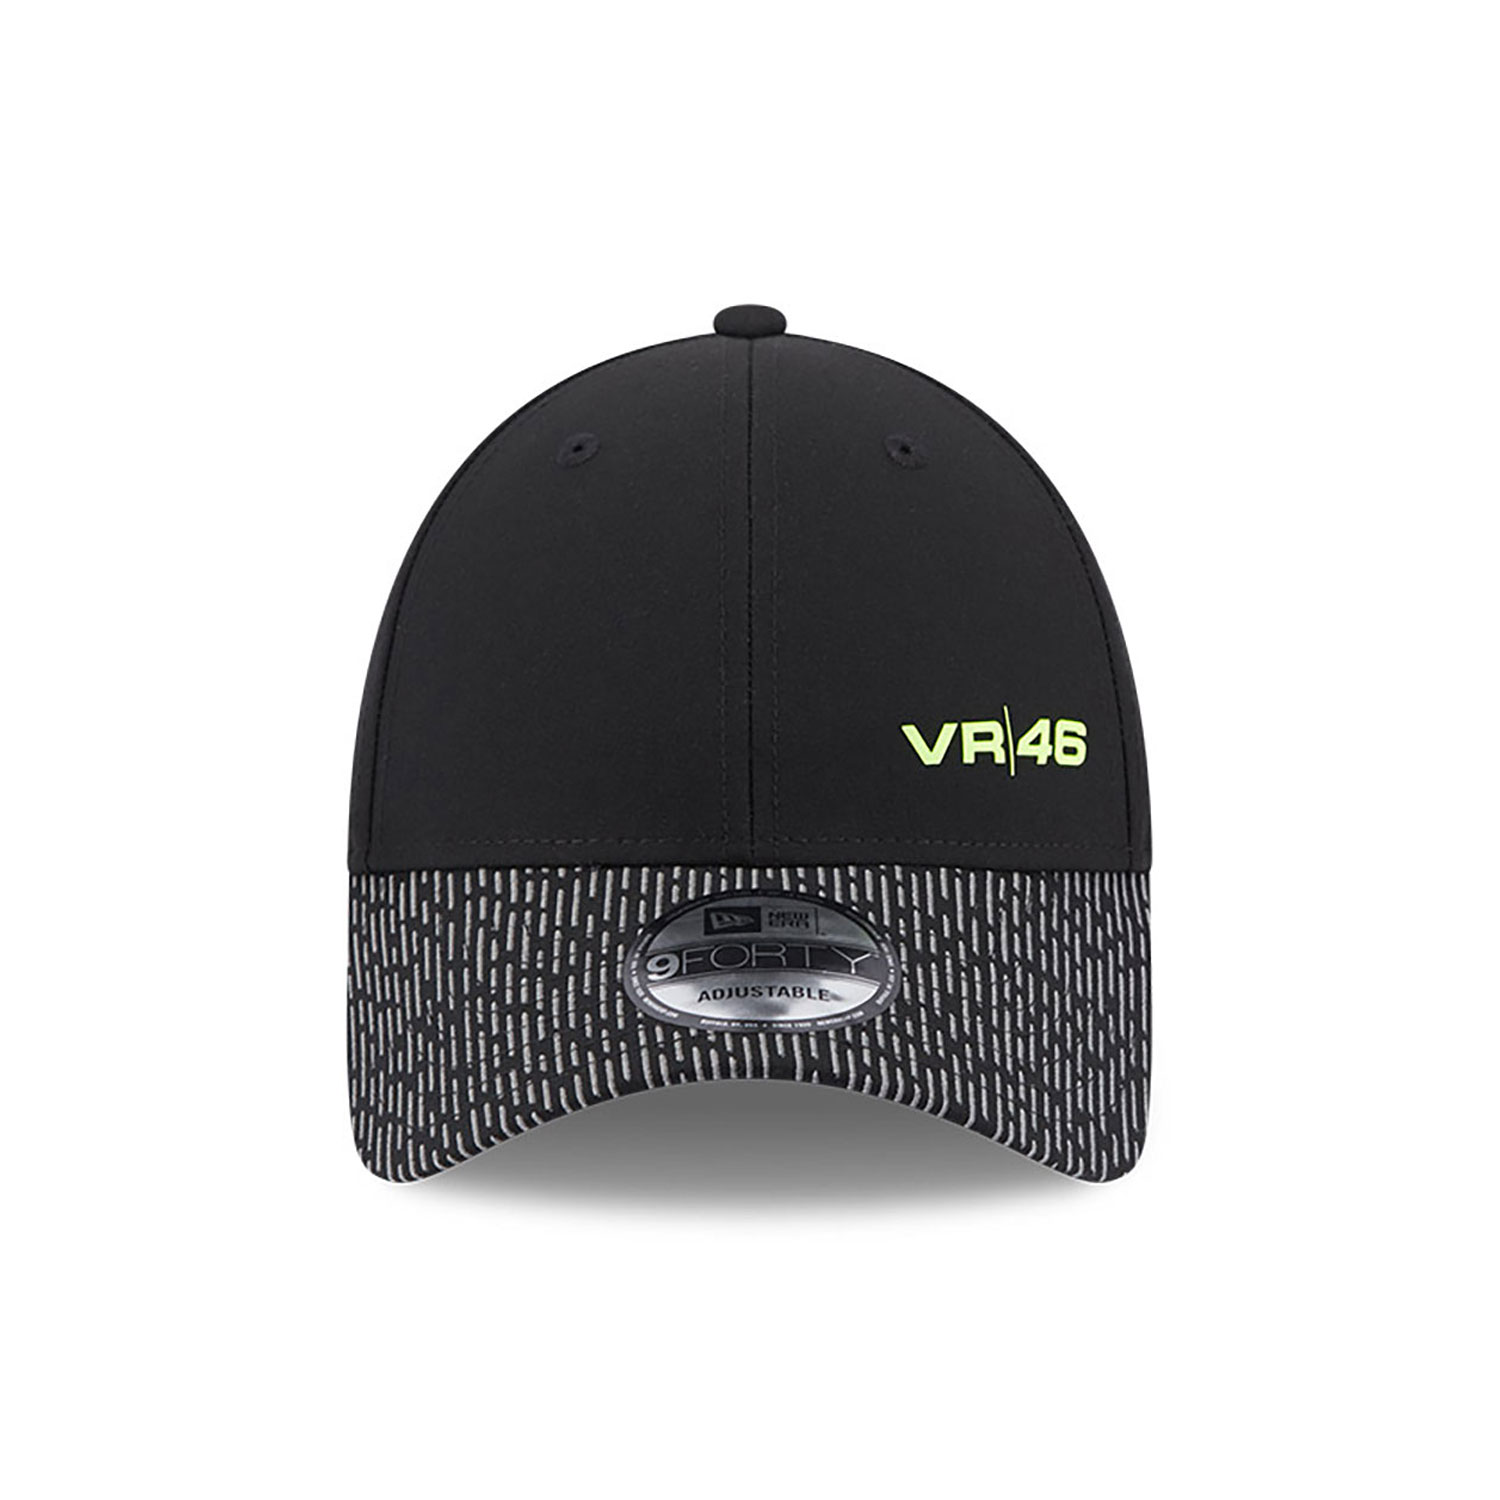 VR46 Reflective Black 9FORTY Adjustable Cap